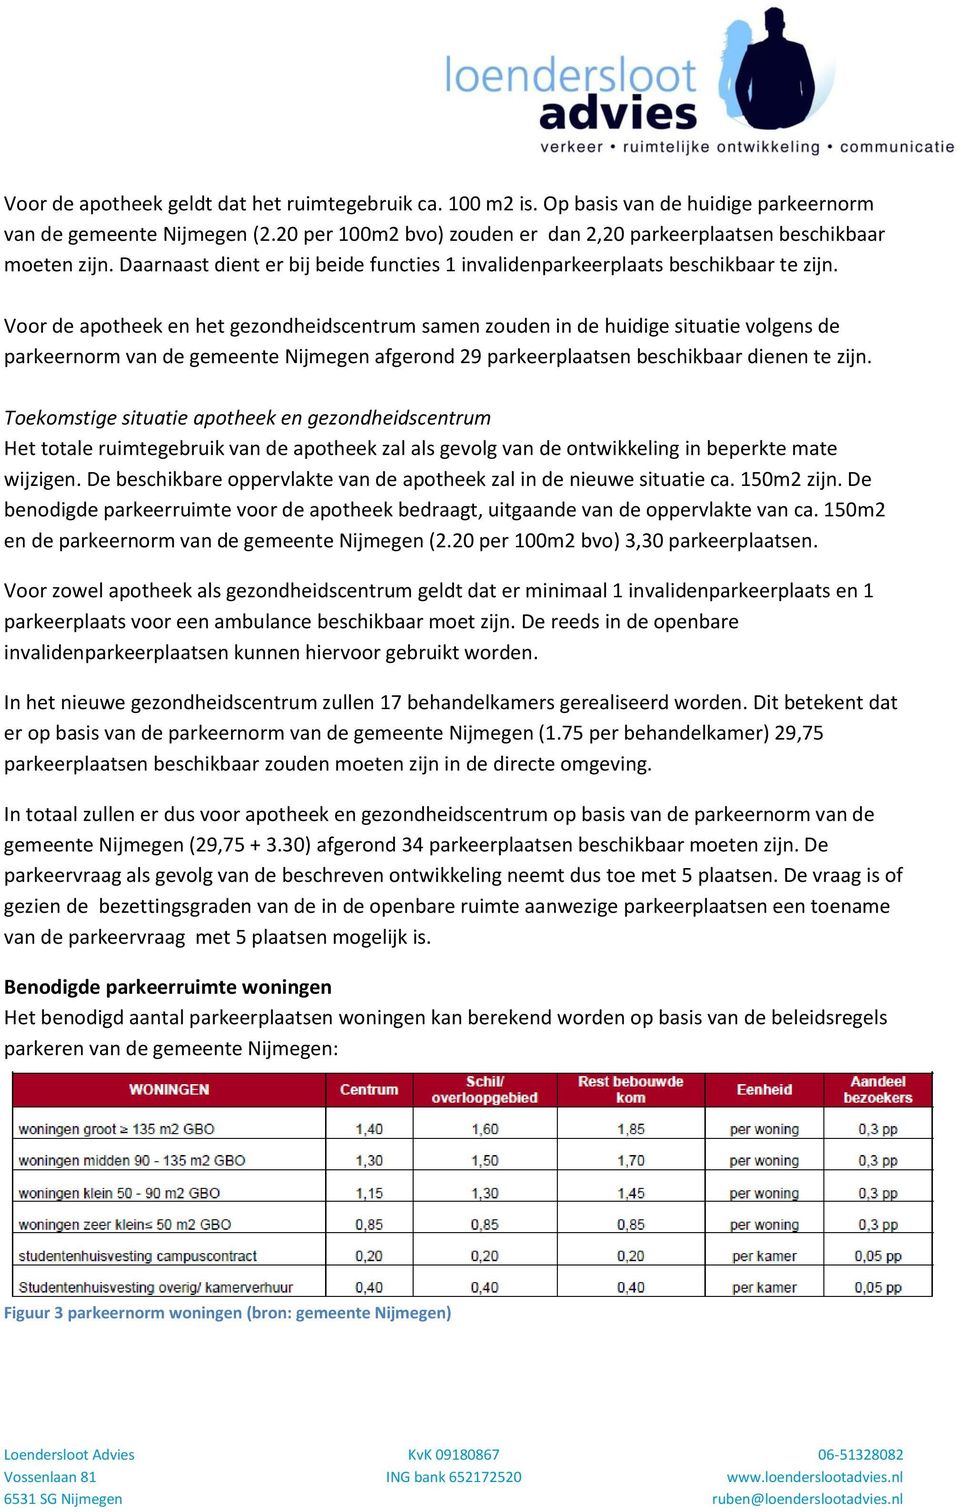 Voor de apotheek en het gezondheidscentrum samen zouden in de huidige situatie volgens de parkeernorm van de gemeente Nijmegen afgerond 29 parkeerplaatsen beschikbaar dienen te zijn.